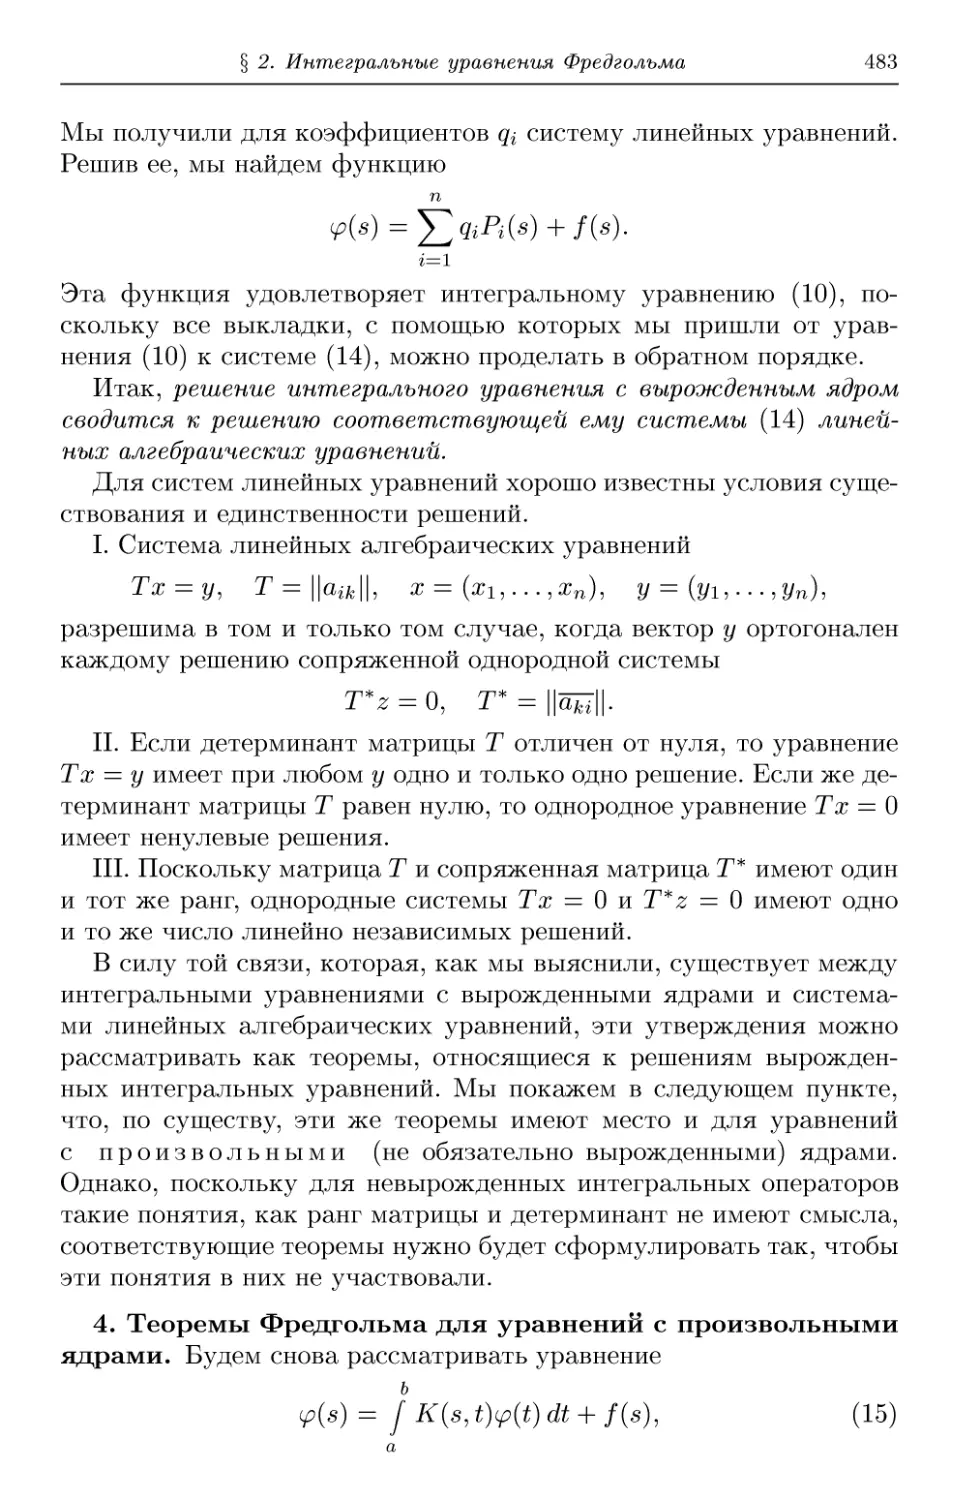 4. Теоремы Фредгольма для уравнений с произвольными ядрами